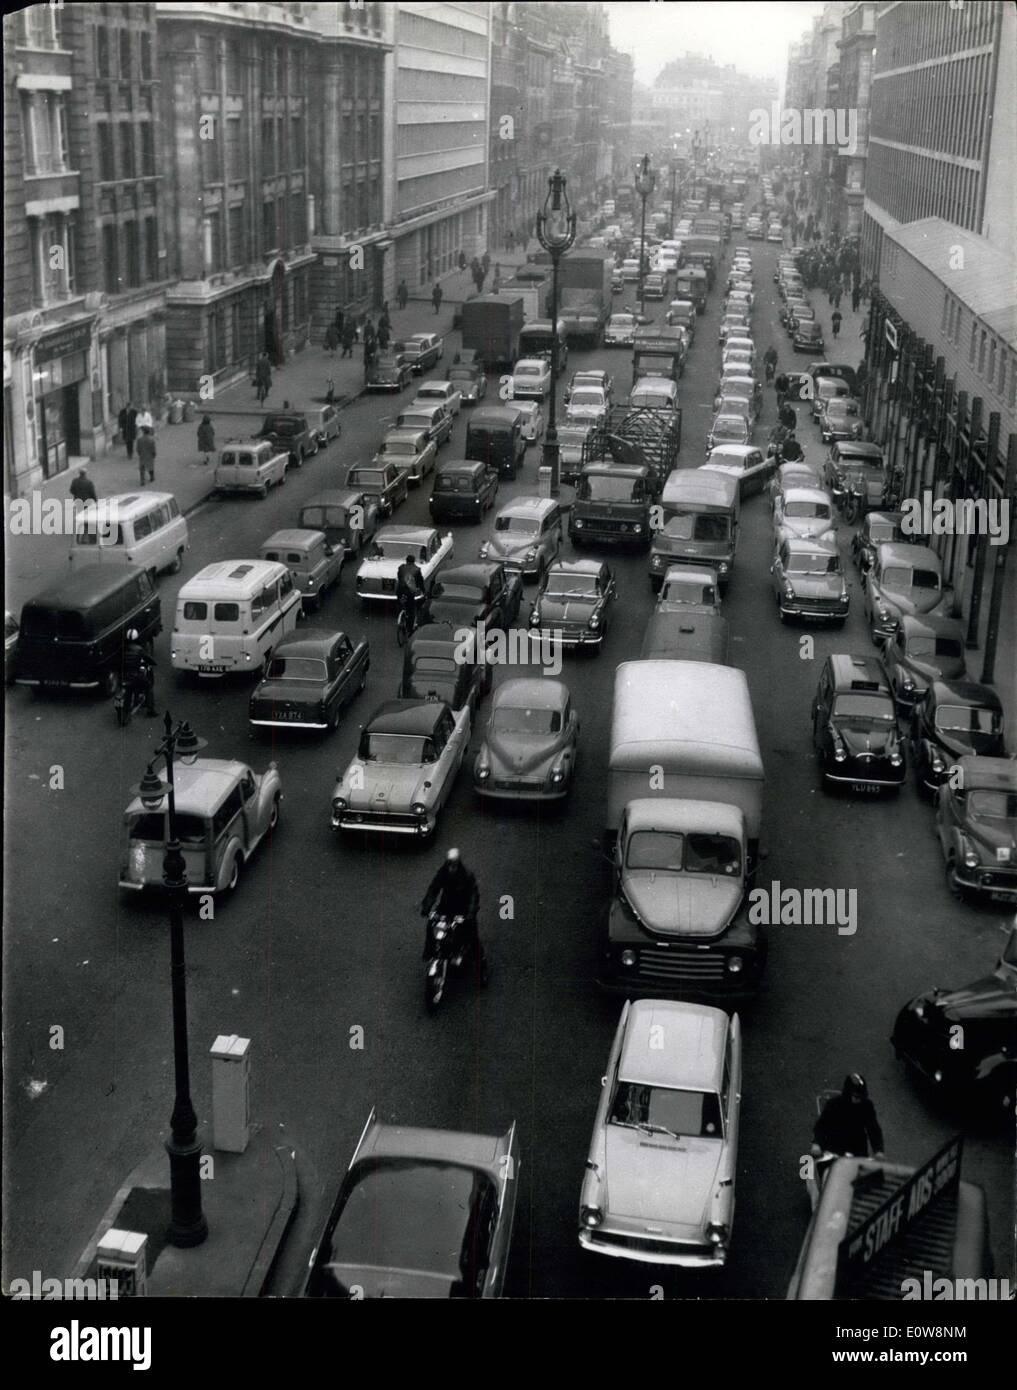 Le 29 janvier 1962 - les Londoniens face long voyage de retour avec peu de transport ? Les conditions étaient cet après-midi à Londres chaotique comme beaucoup se heurtent au problème de rentrer à la maison avec peu de transports publics disponibles en tant que travailleurs souterrains font la grève d'un jour et de nombreux arrêts de bus et les employés des chemins de fer sont également dans la sympathie. Photo montre : trafic lourd dans Farringdon street (vue de HOLBORN VIADUCT) cet après-midi que le rush de retour a commencé plus tôt que d'habitude. Keystone Banque D'Images